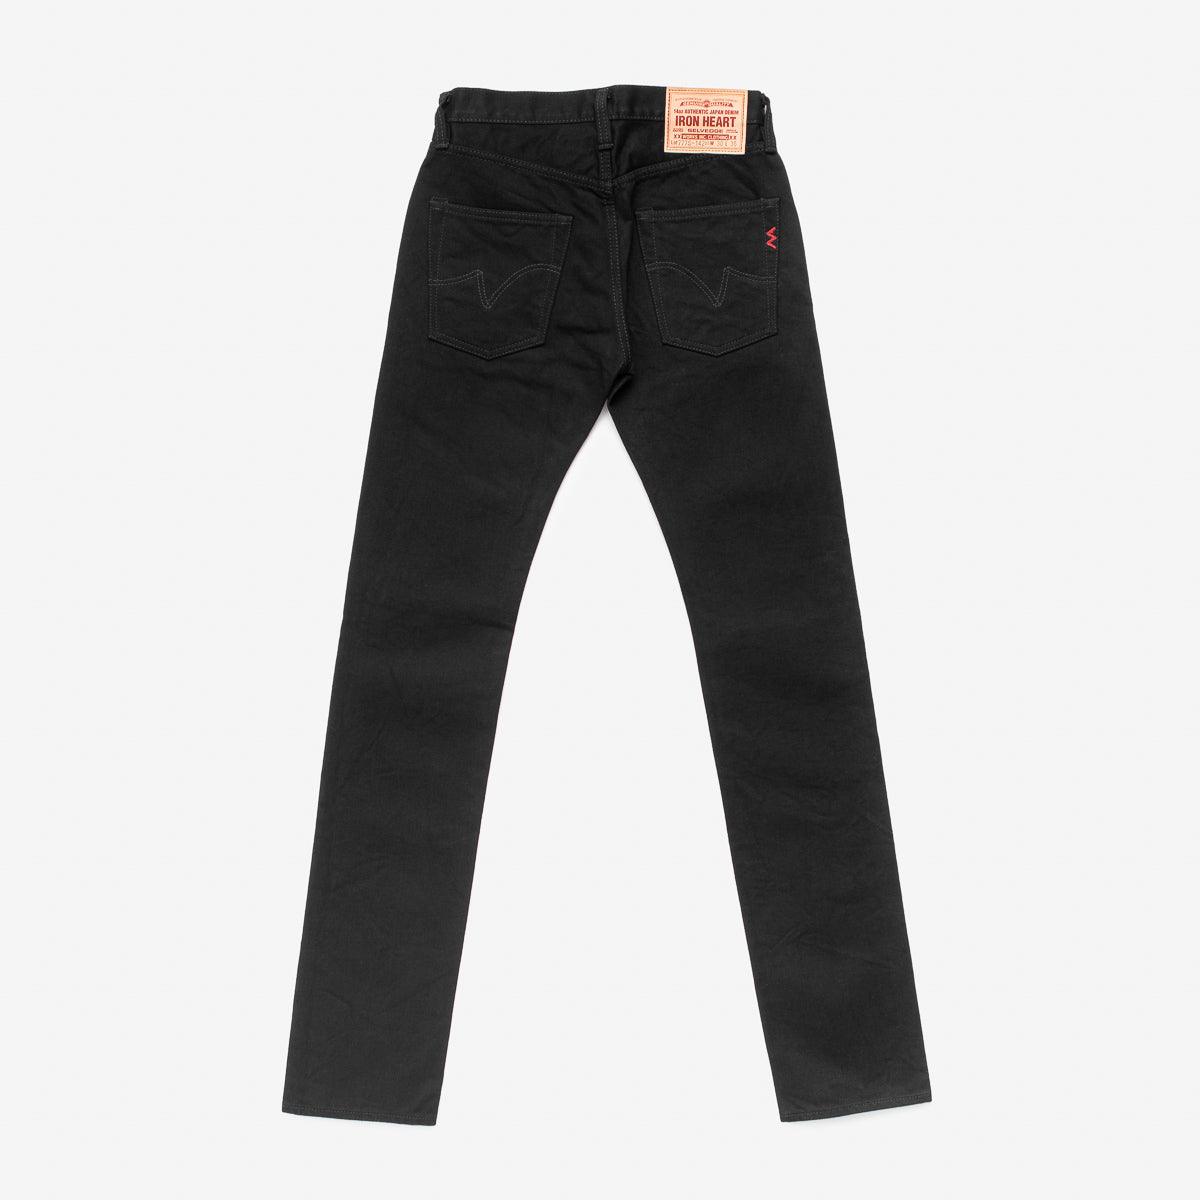 IH-777S-142bb - 14oz Selvedge Denim Slim Tapered Jeans - Black/Black